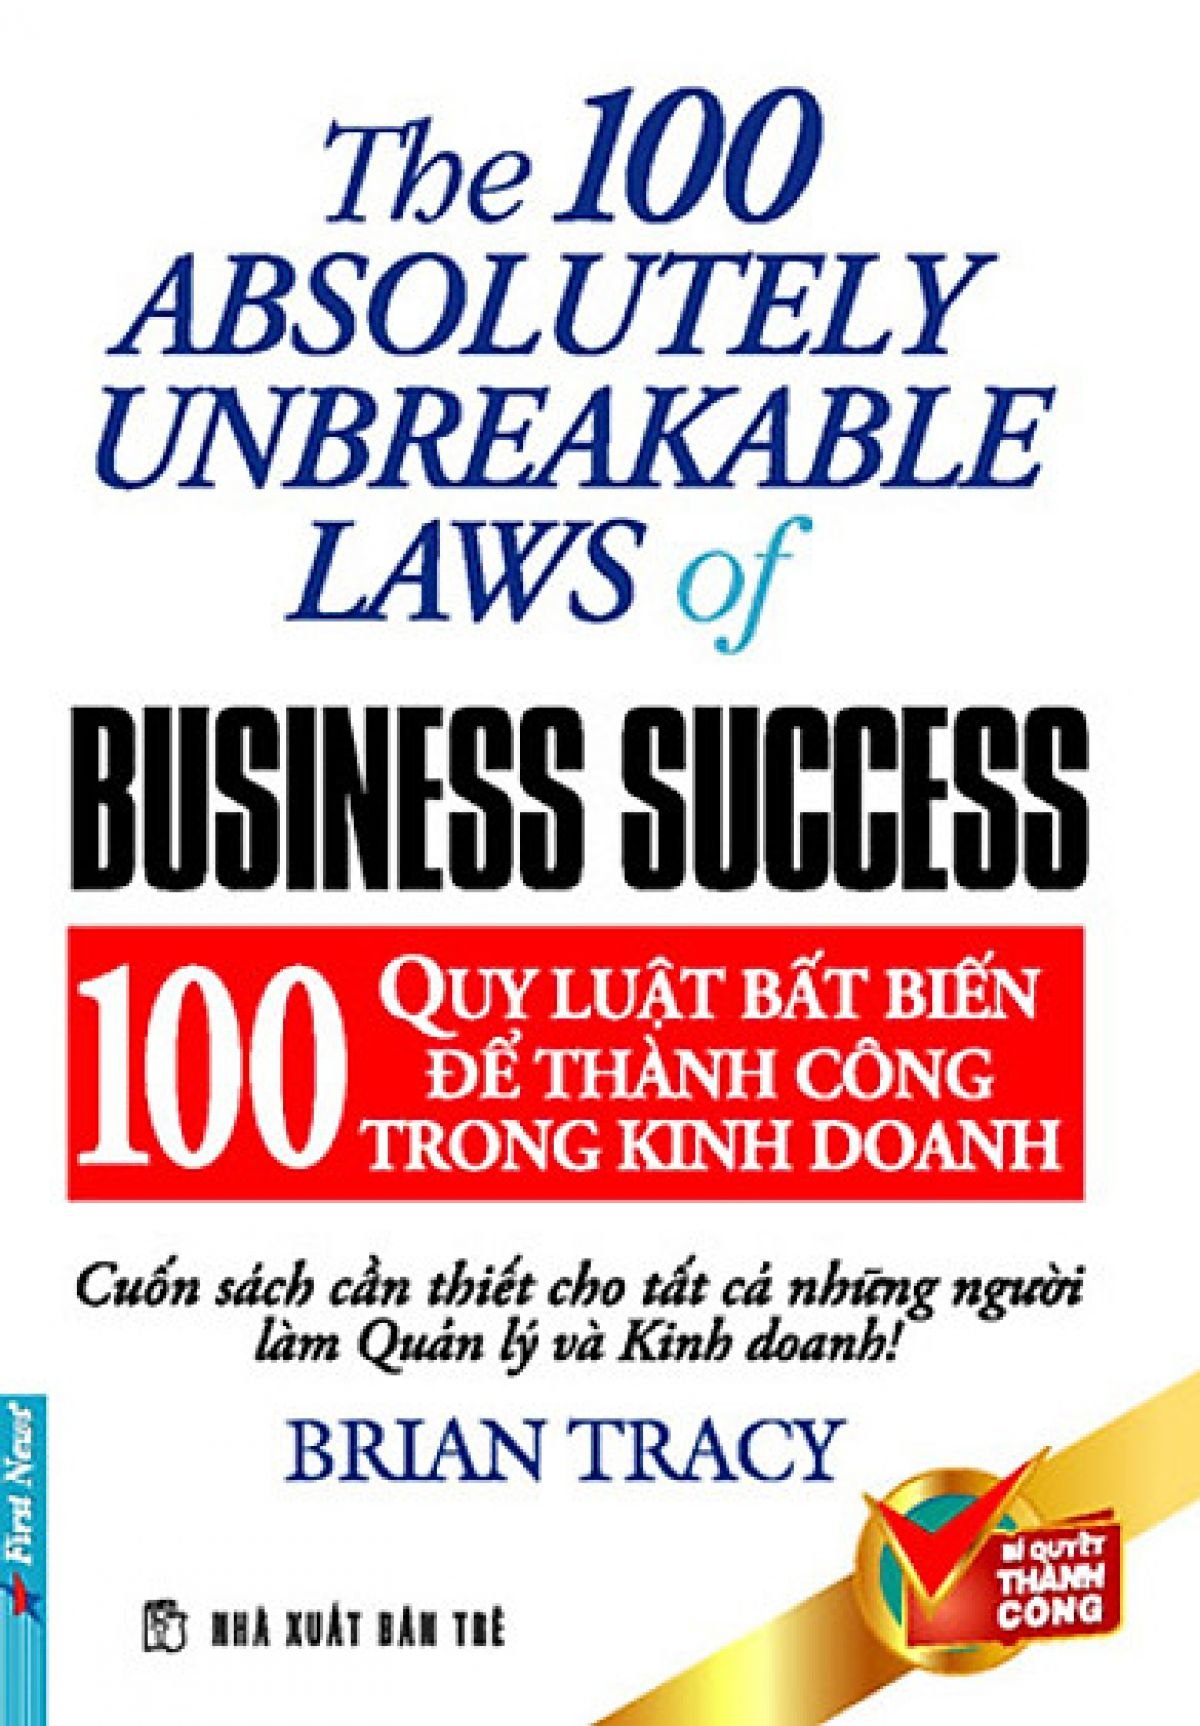 100 quy luật bất biến trong kinh doanh